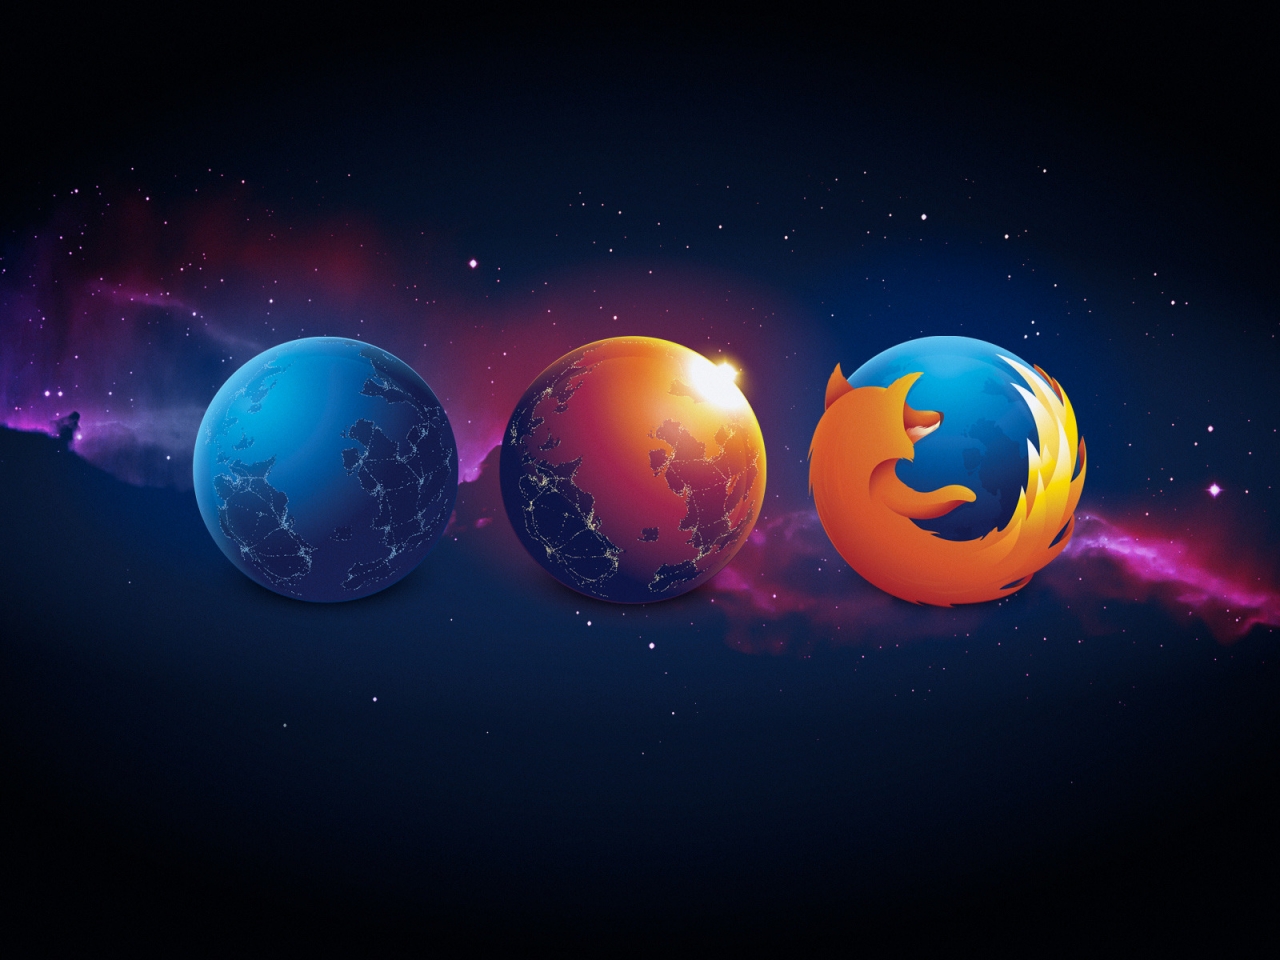 Firefox Nightly Aurora for 1280 x 960 resolution